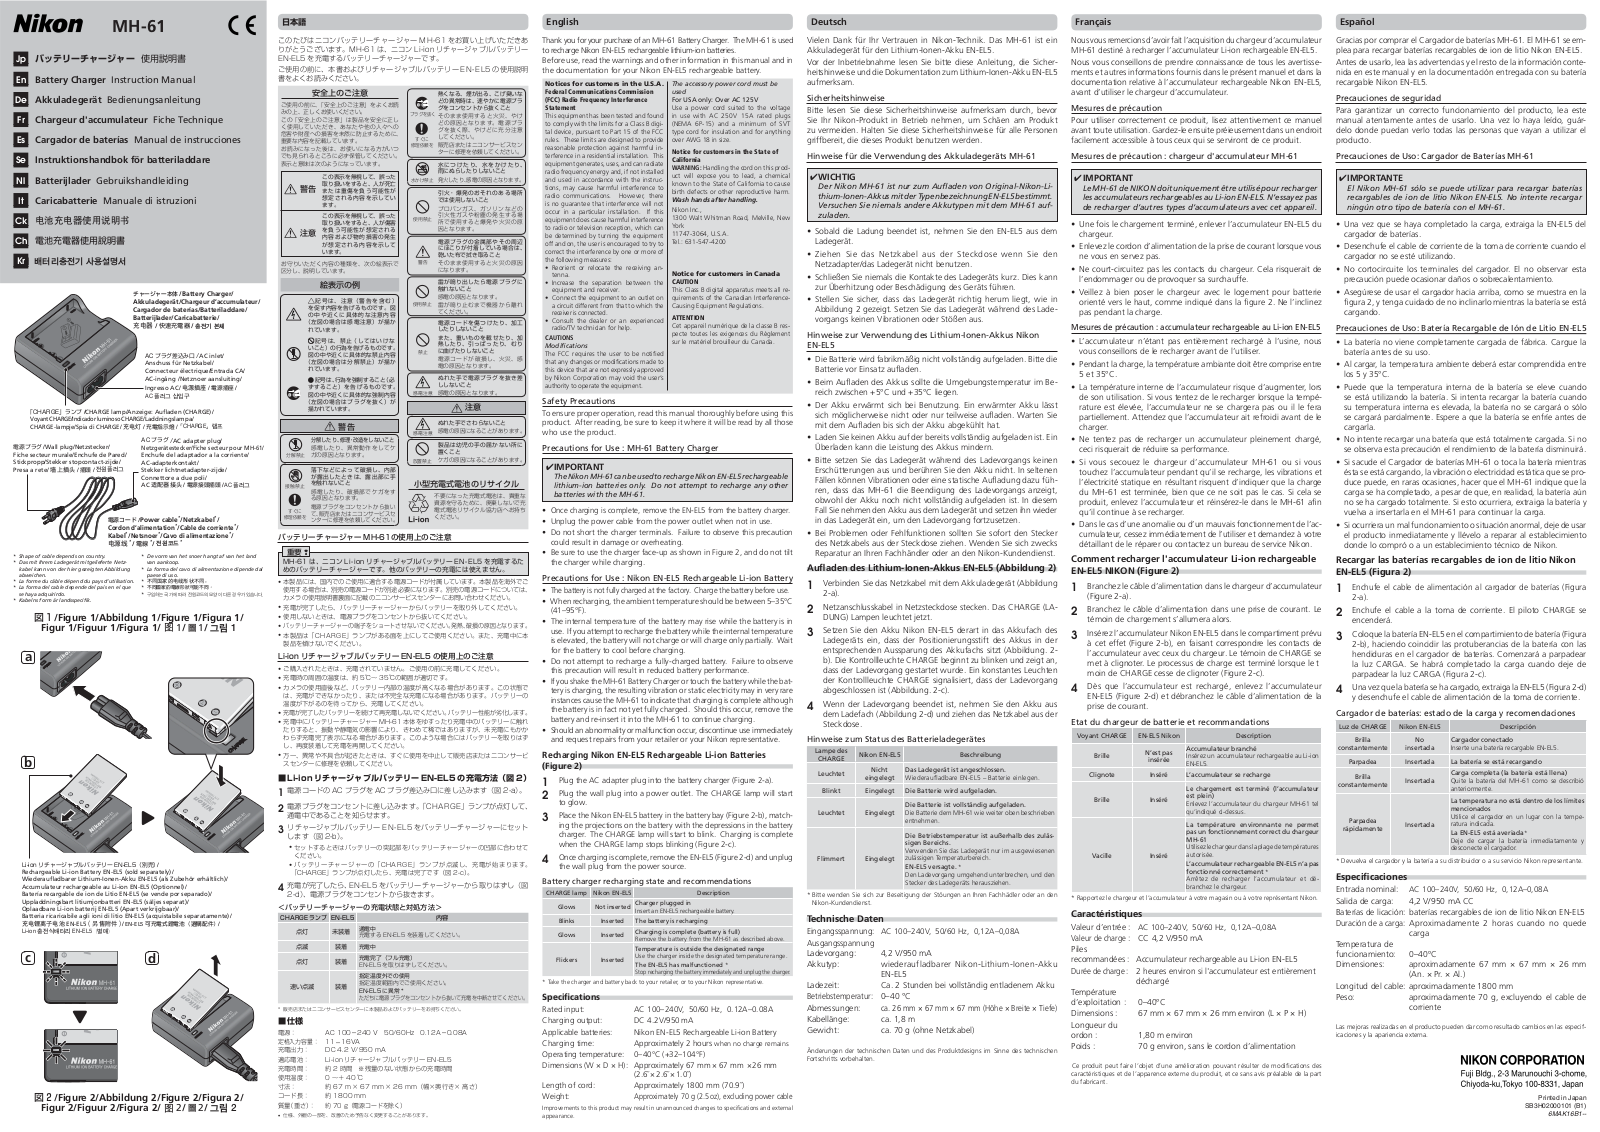 Nikon MH-61 Owner's Manual